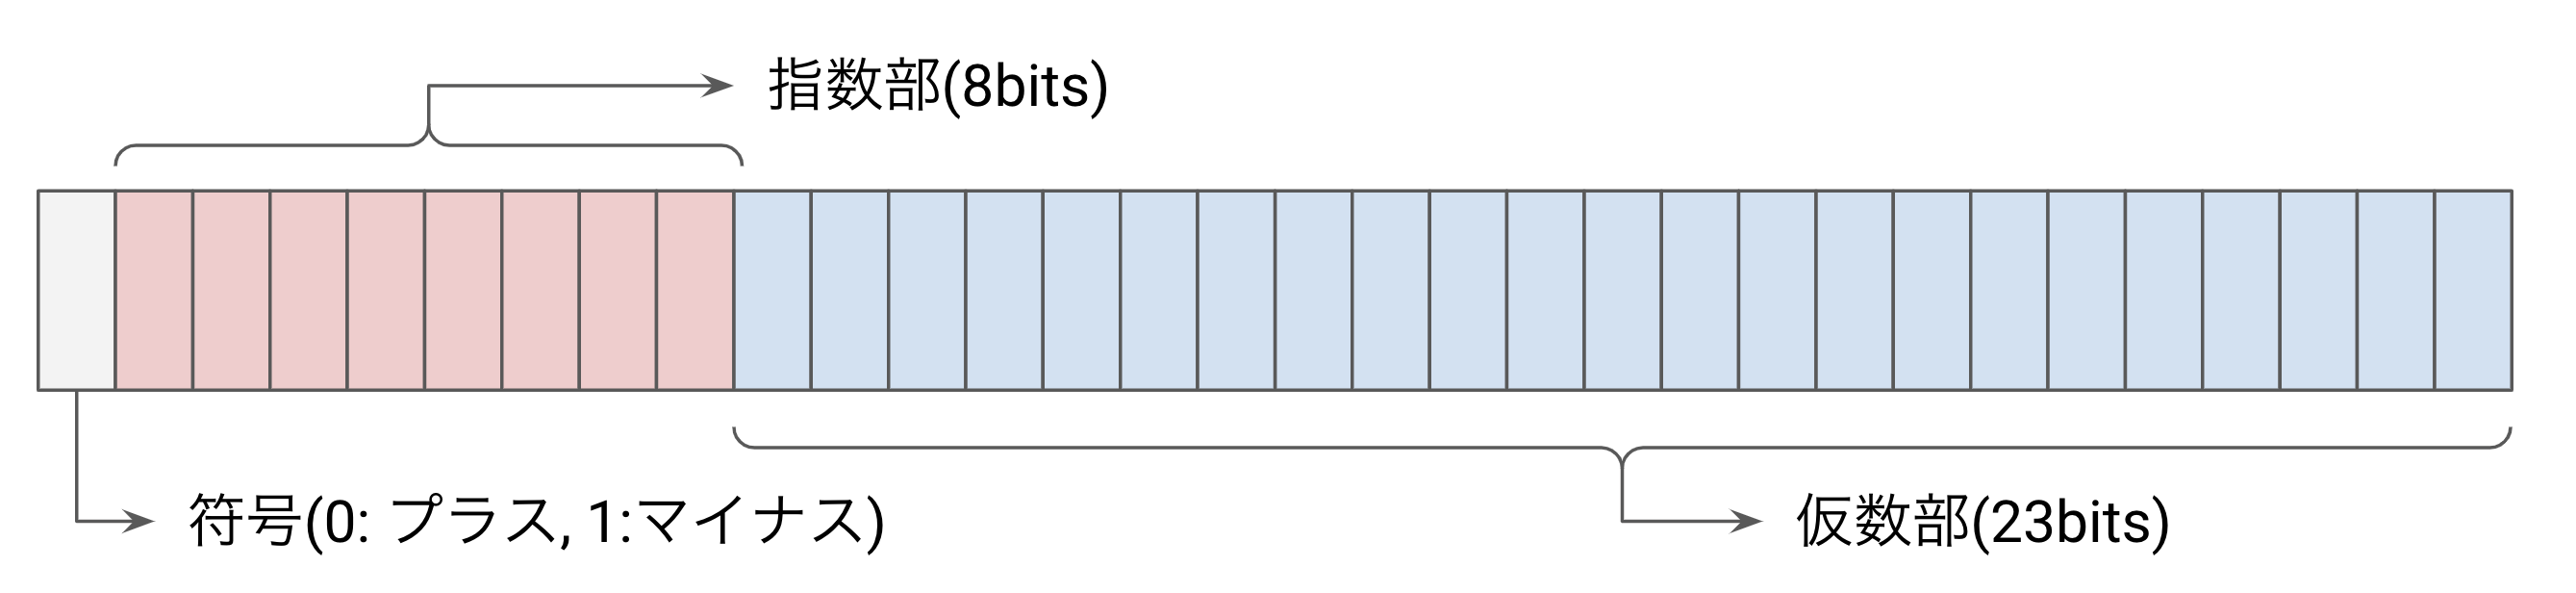 32bit 浮動小数点のビット表現